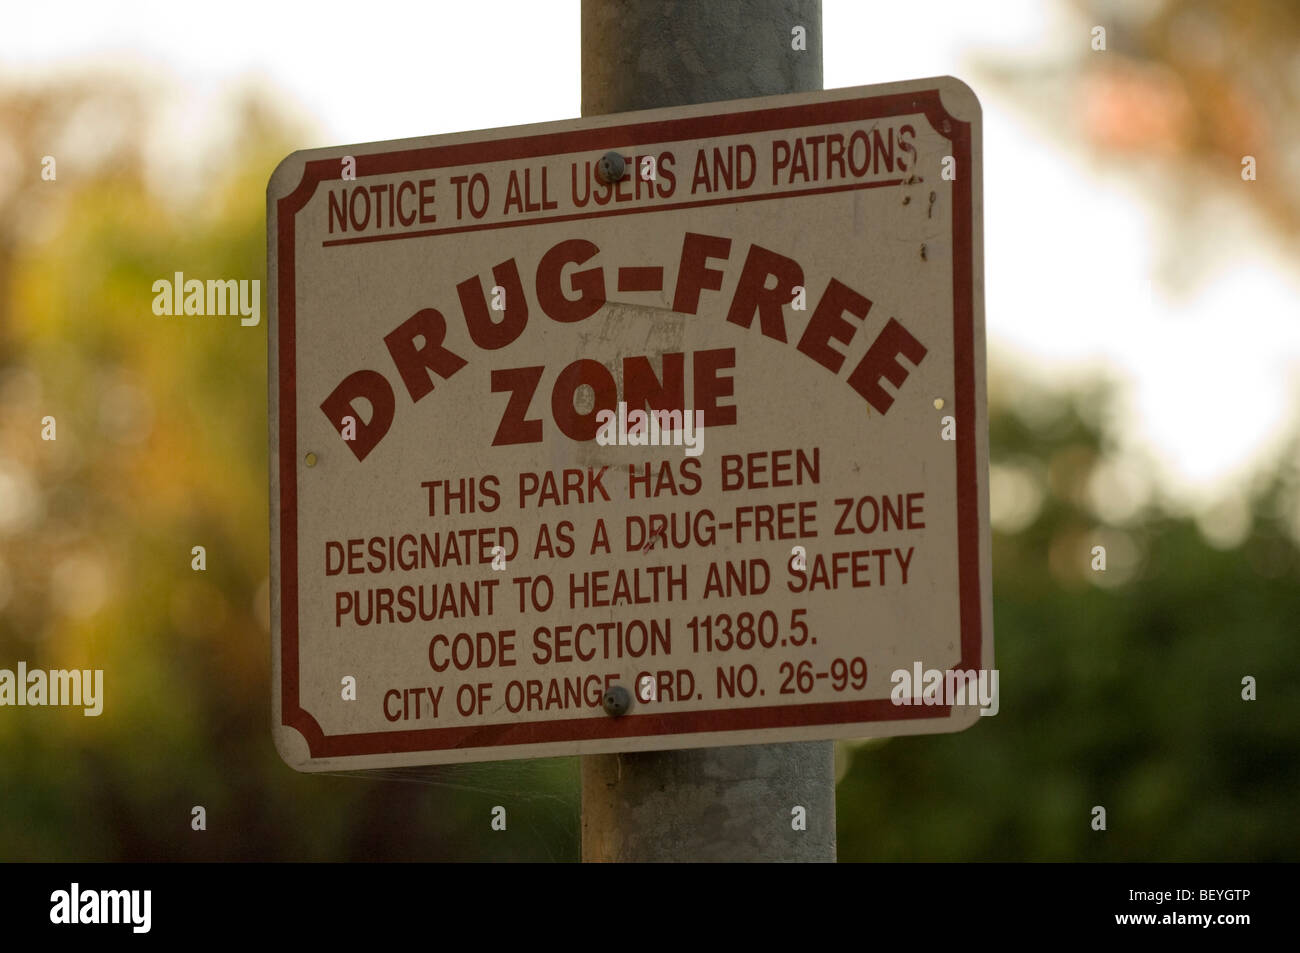 La città di Orange, California avvisi posti nel parco che dichiara la struttura pubblica un farmaco-zona franca. Foto Stock